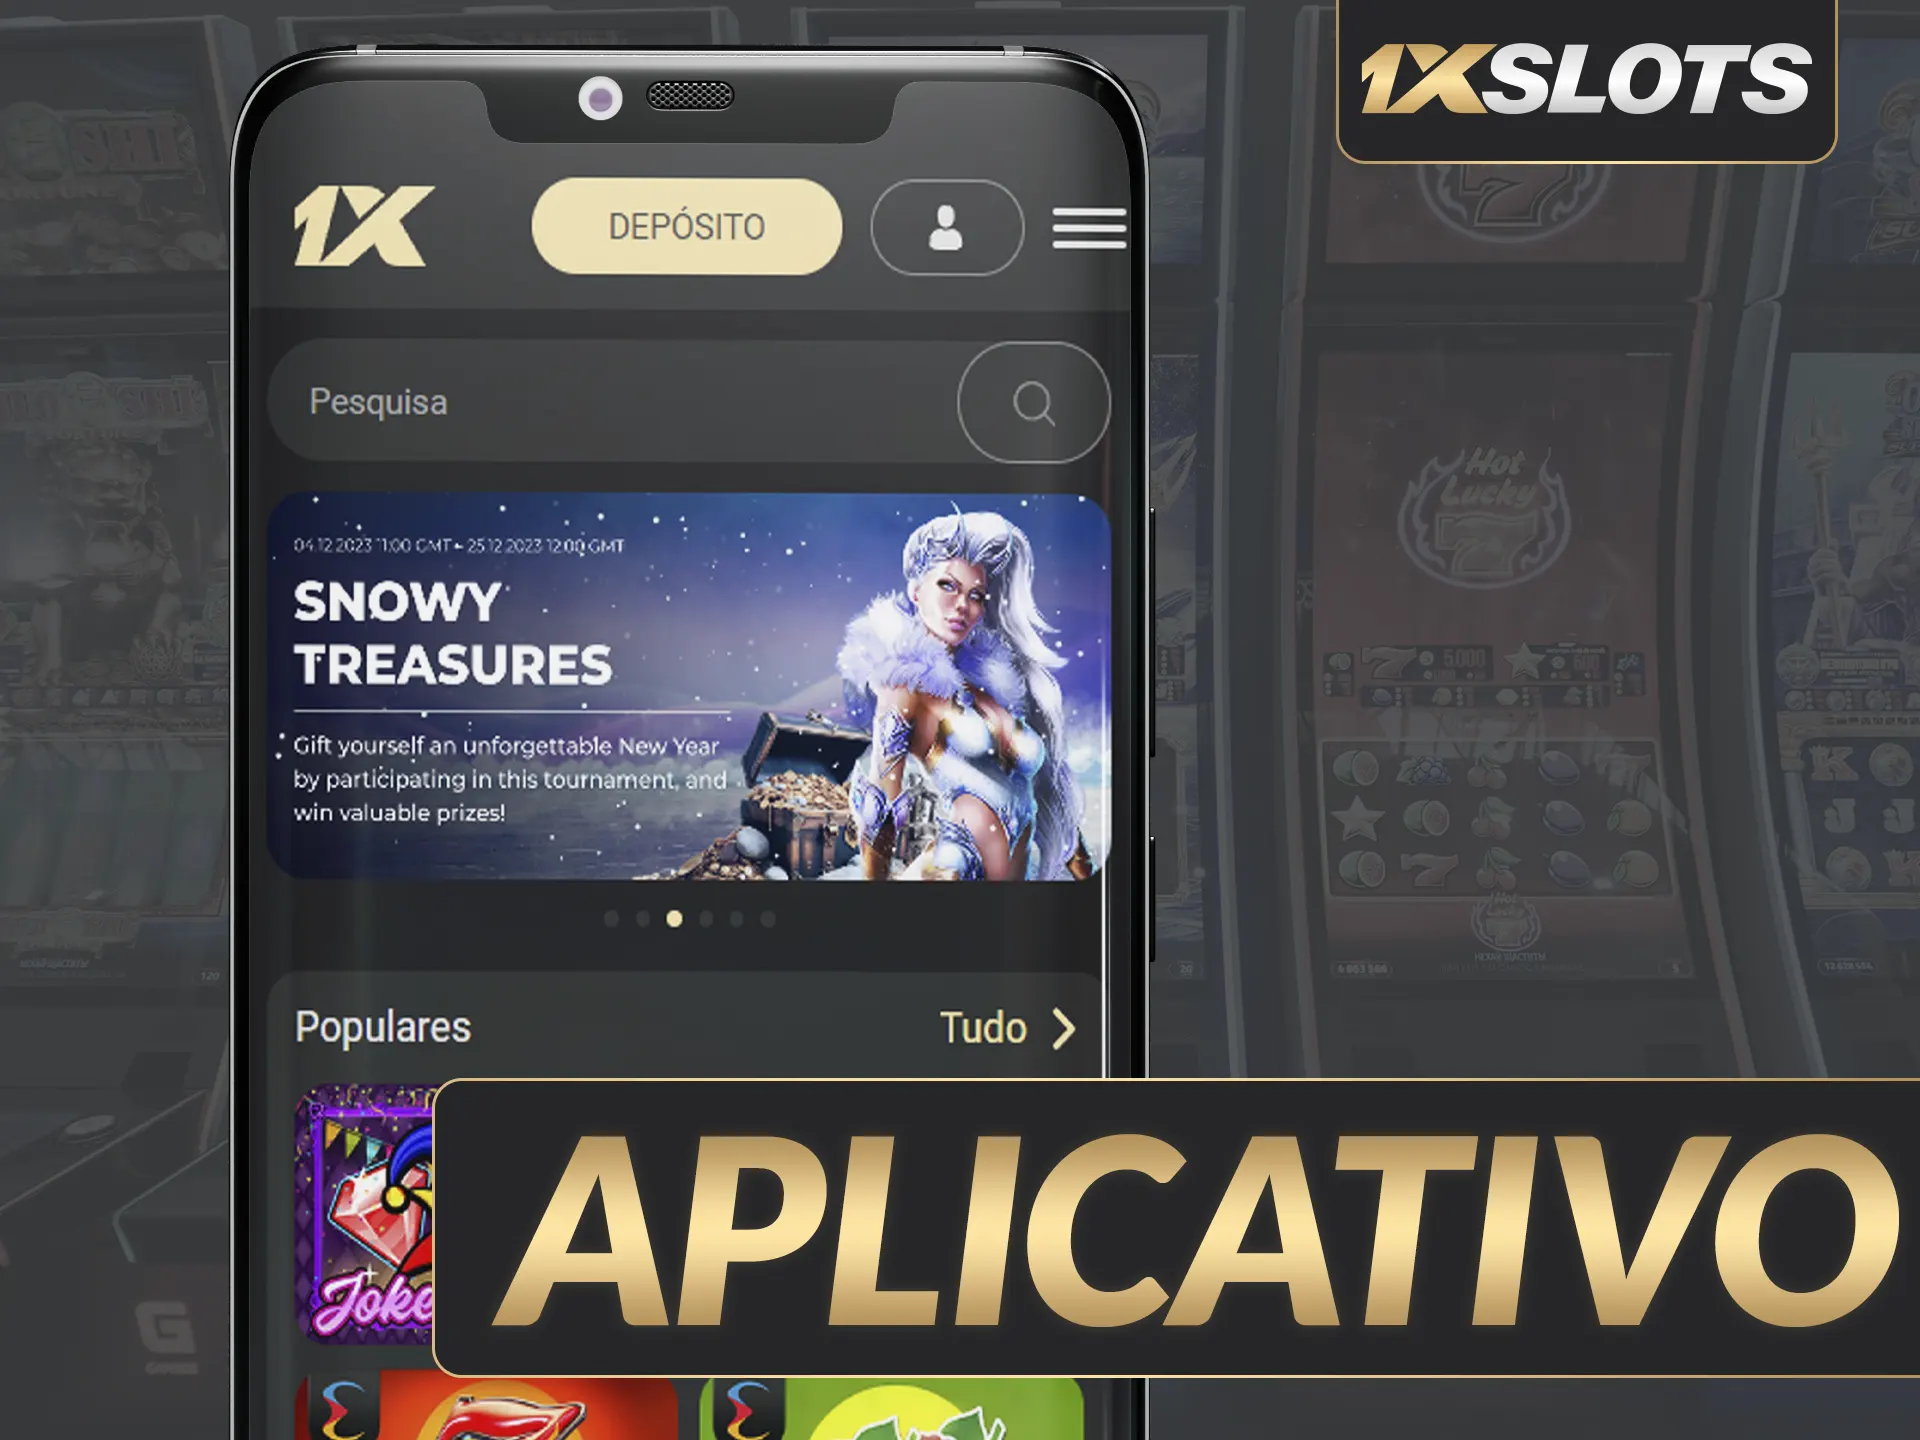 1xSlots App: Conveniente, leve, em português, todos serviços disponíveis, acessível em Android.